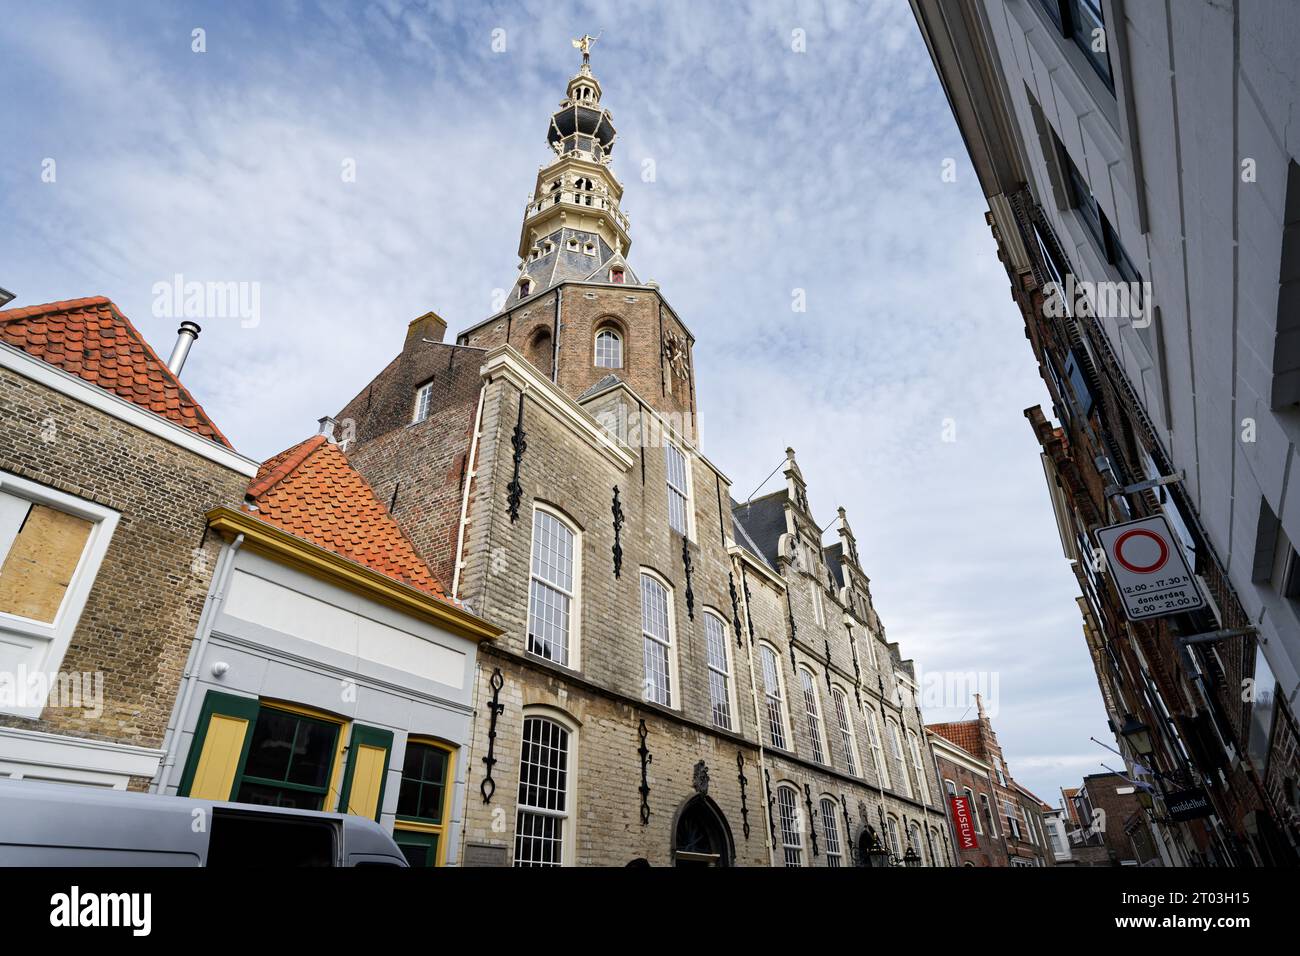 Fassade des historischen Stadhuismuseums in Zierikzee in der niederländischen Provinz zeeland Stockfoto